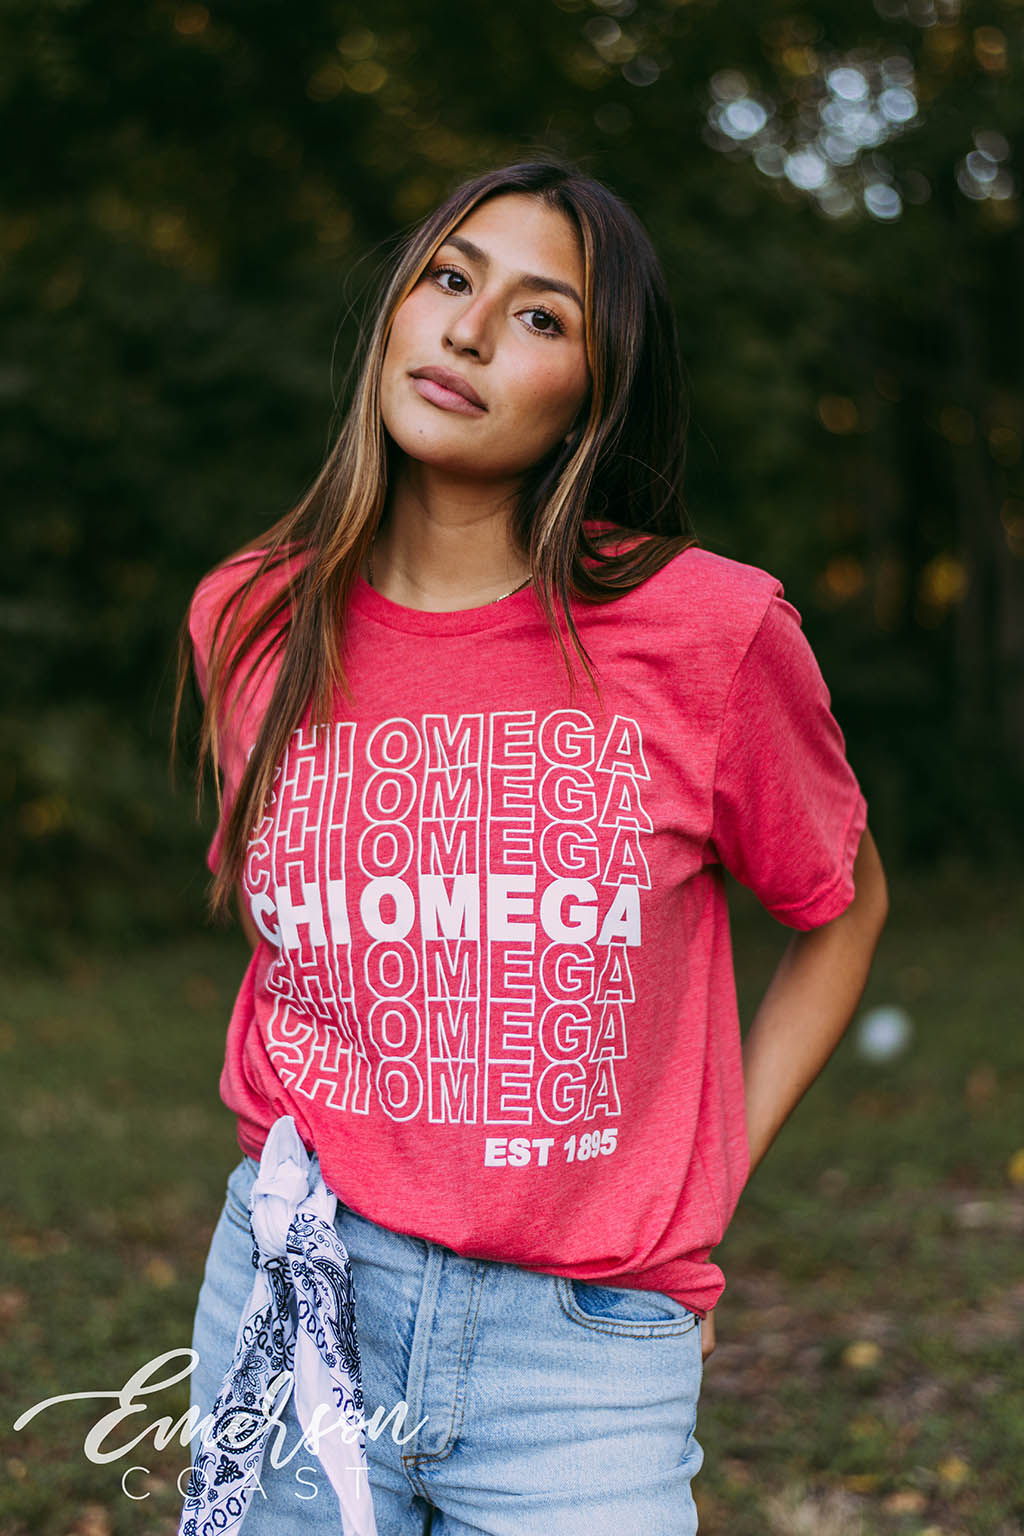 Chi Omega Red PR Tshirt